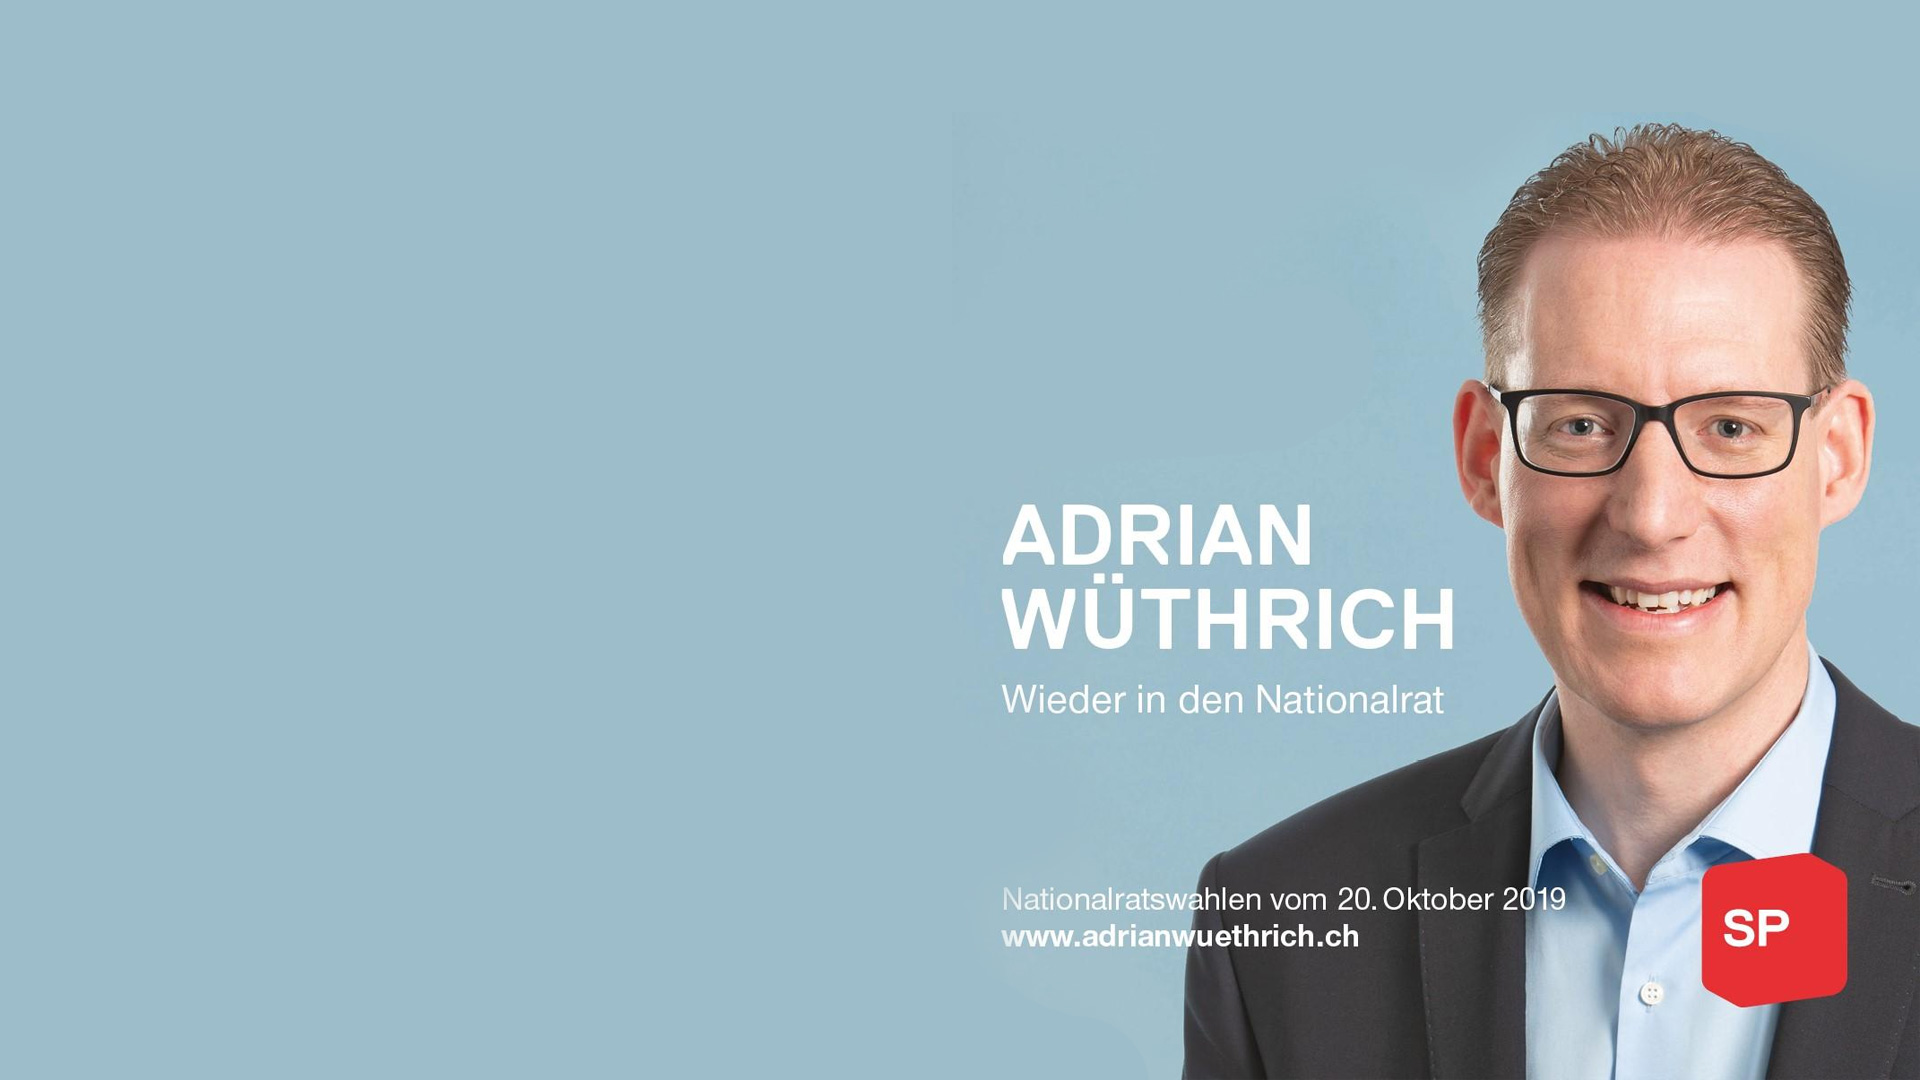 Adrian Wüthrich - Online Marketing